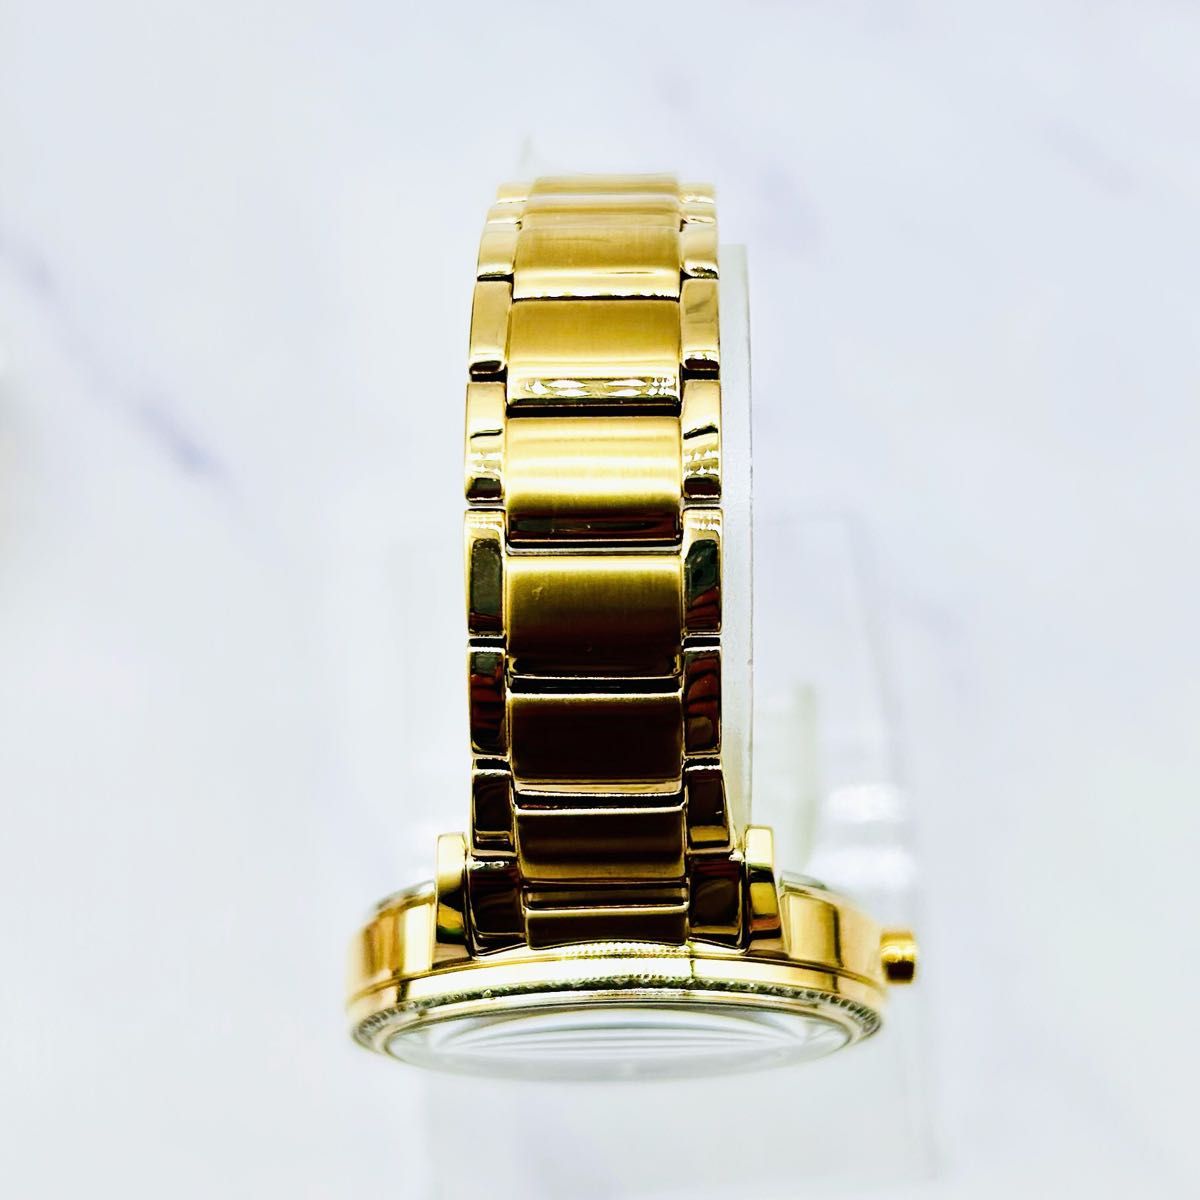 定価5.7万 ダイヤベゼル★シチズン/CITIZEN エコドライブ ソーラー 女性用腕時計 レディース ゴールド